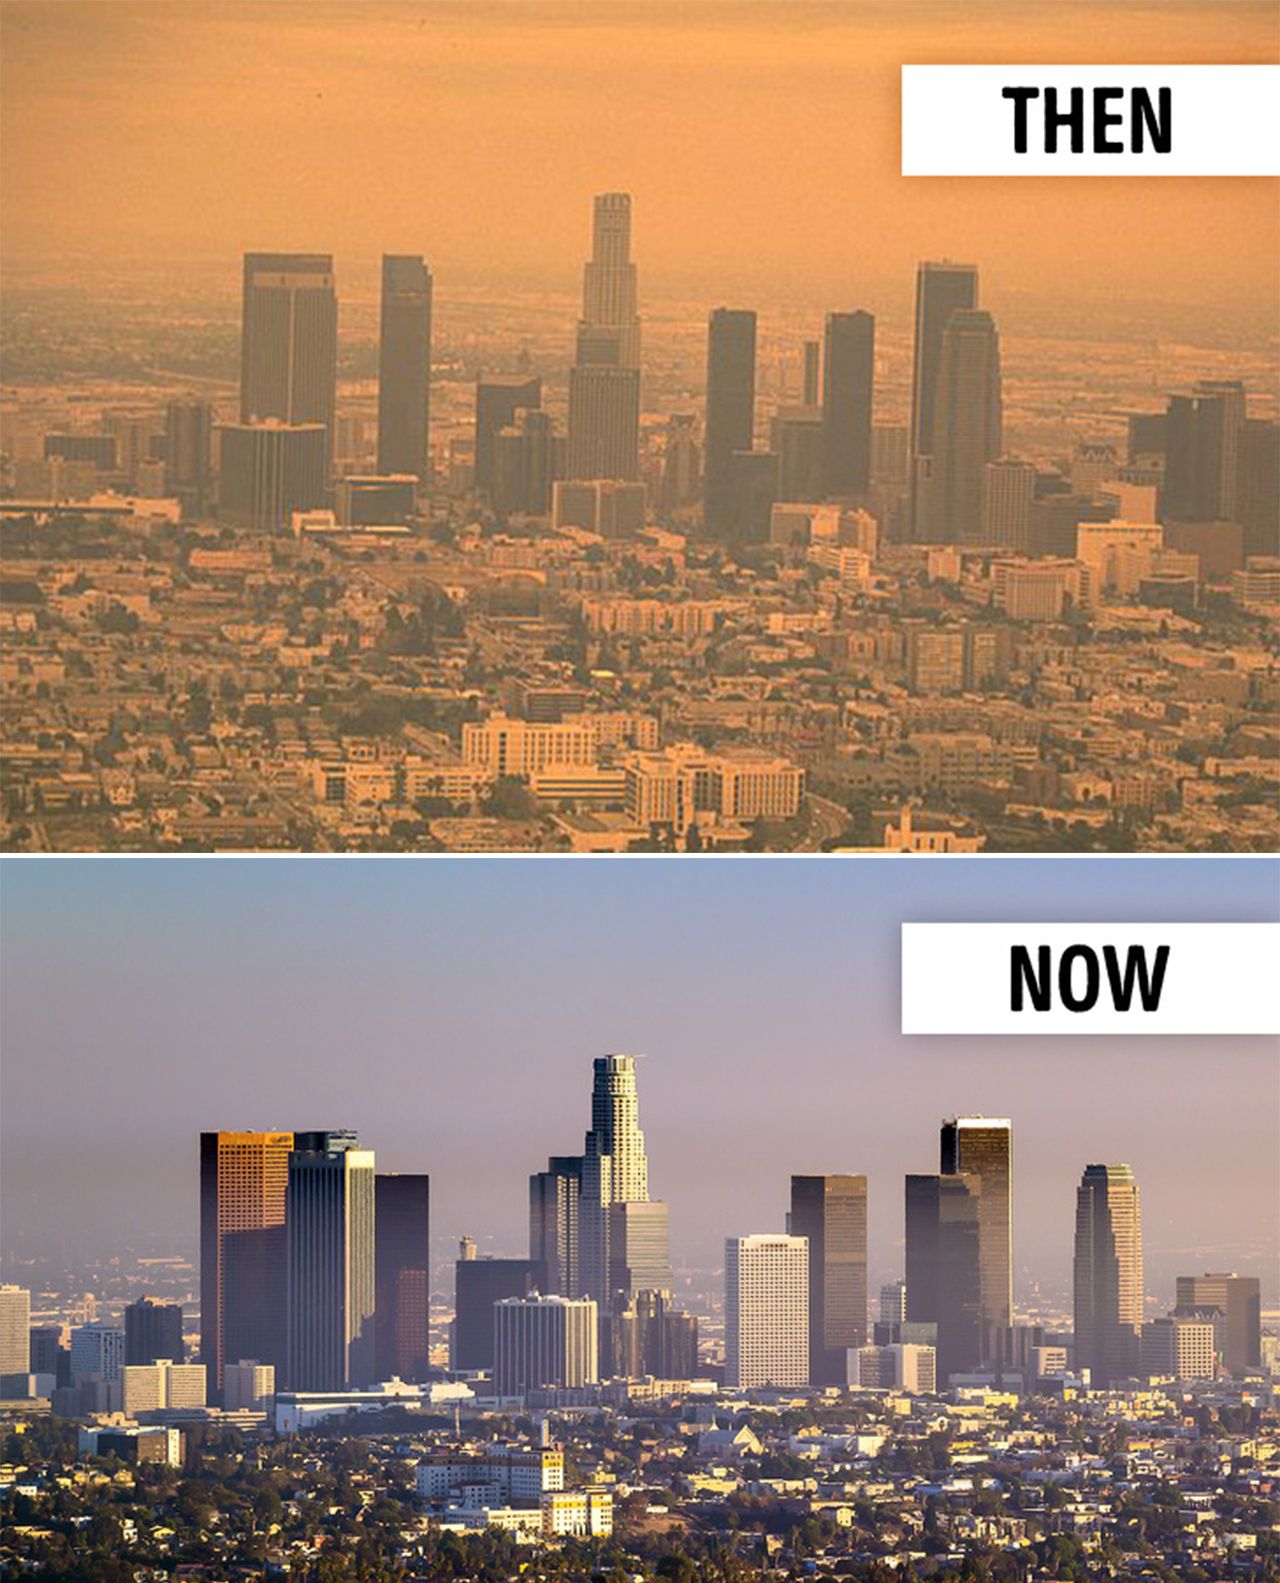 大城市vs小城市图片